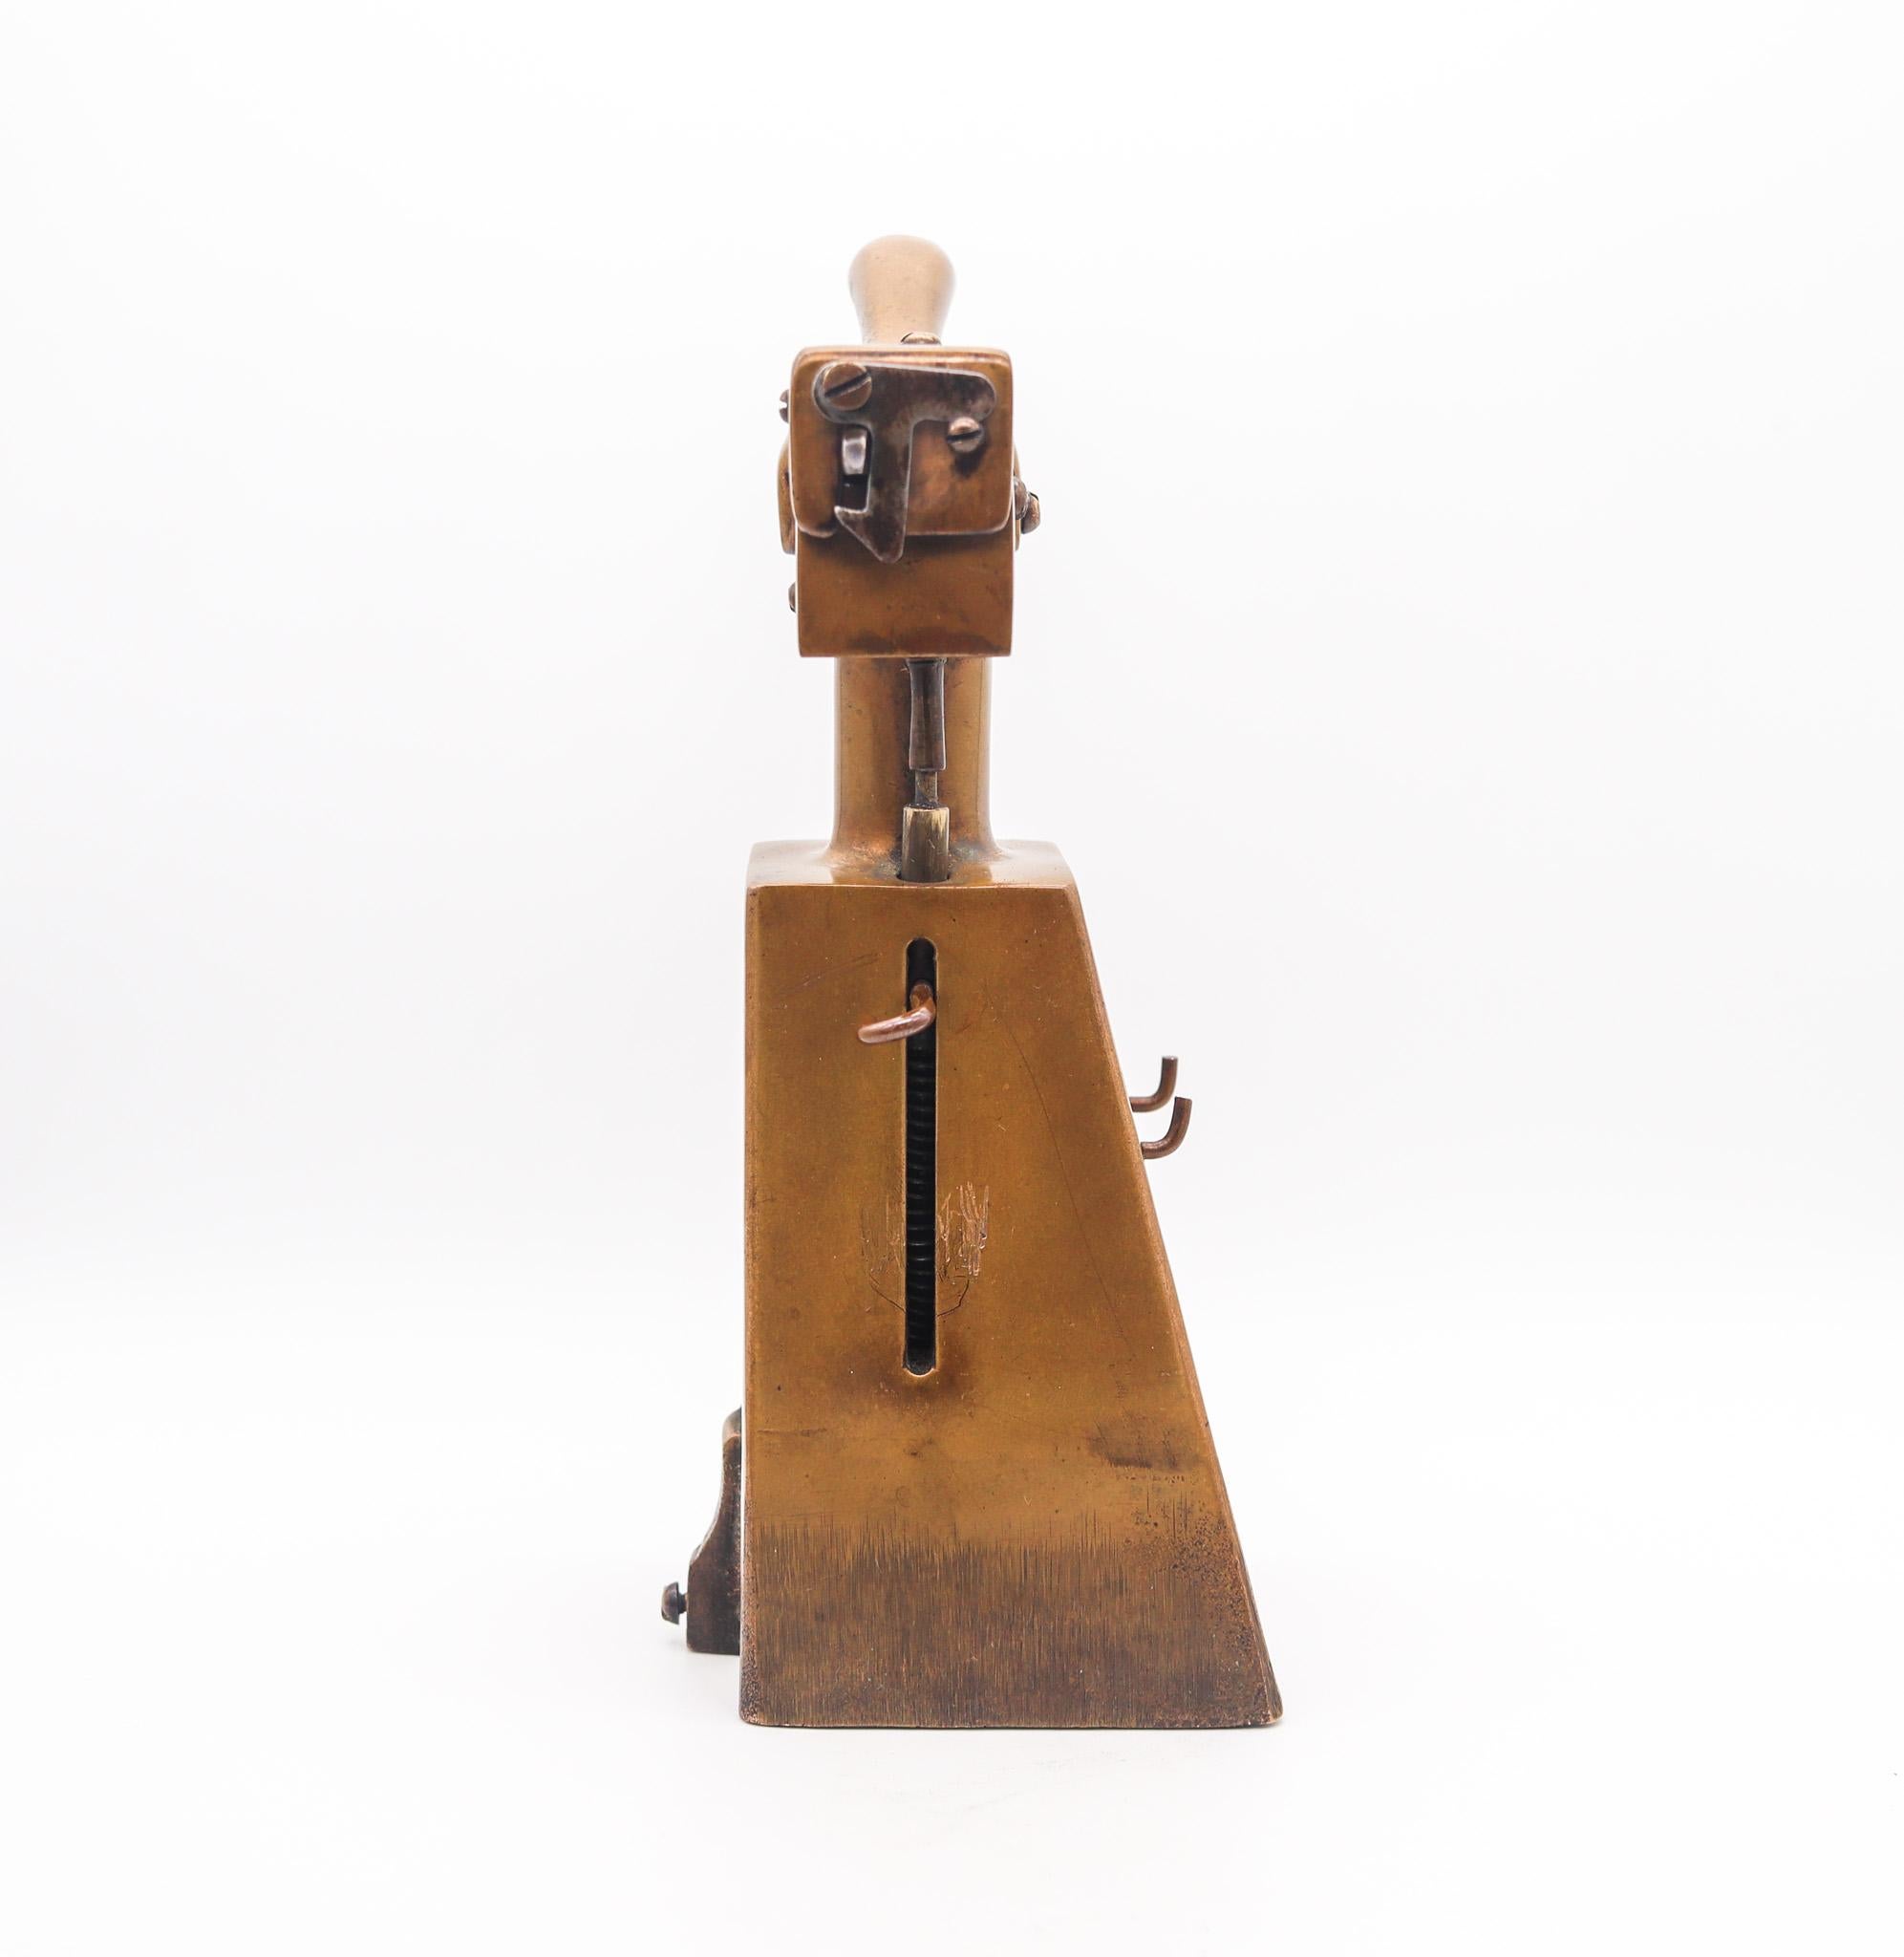 Tischfeuerzeug für den Schreibtisch von Samuel E. Ghinn.

Dies ist ein hervorragendes und sehr seltenes halbautomatisches Benzinfeuerzeug, das 1923 in Cincinnati, Ohio, von Samuel E. Ghinn hergestellt wurde. Dieses Feuerzeug wurde in der S.E.